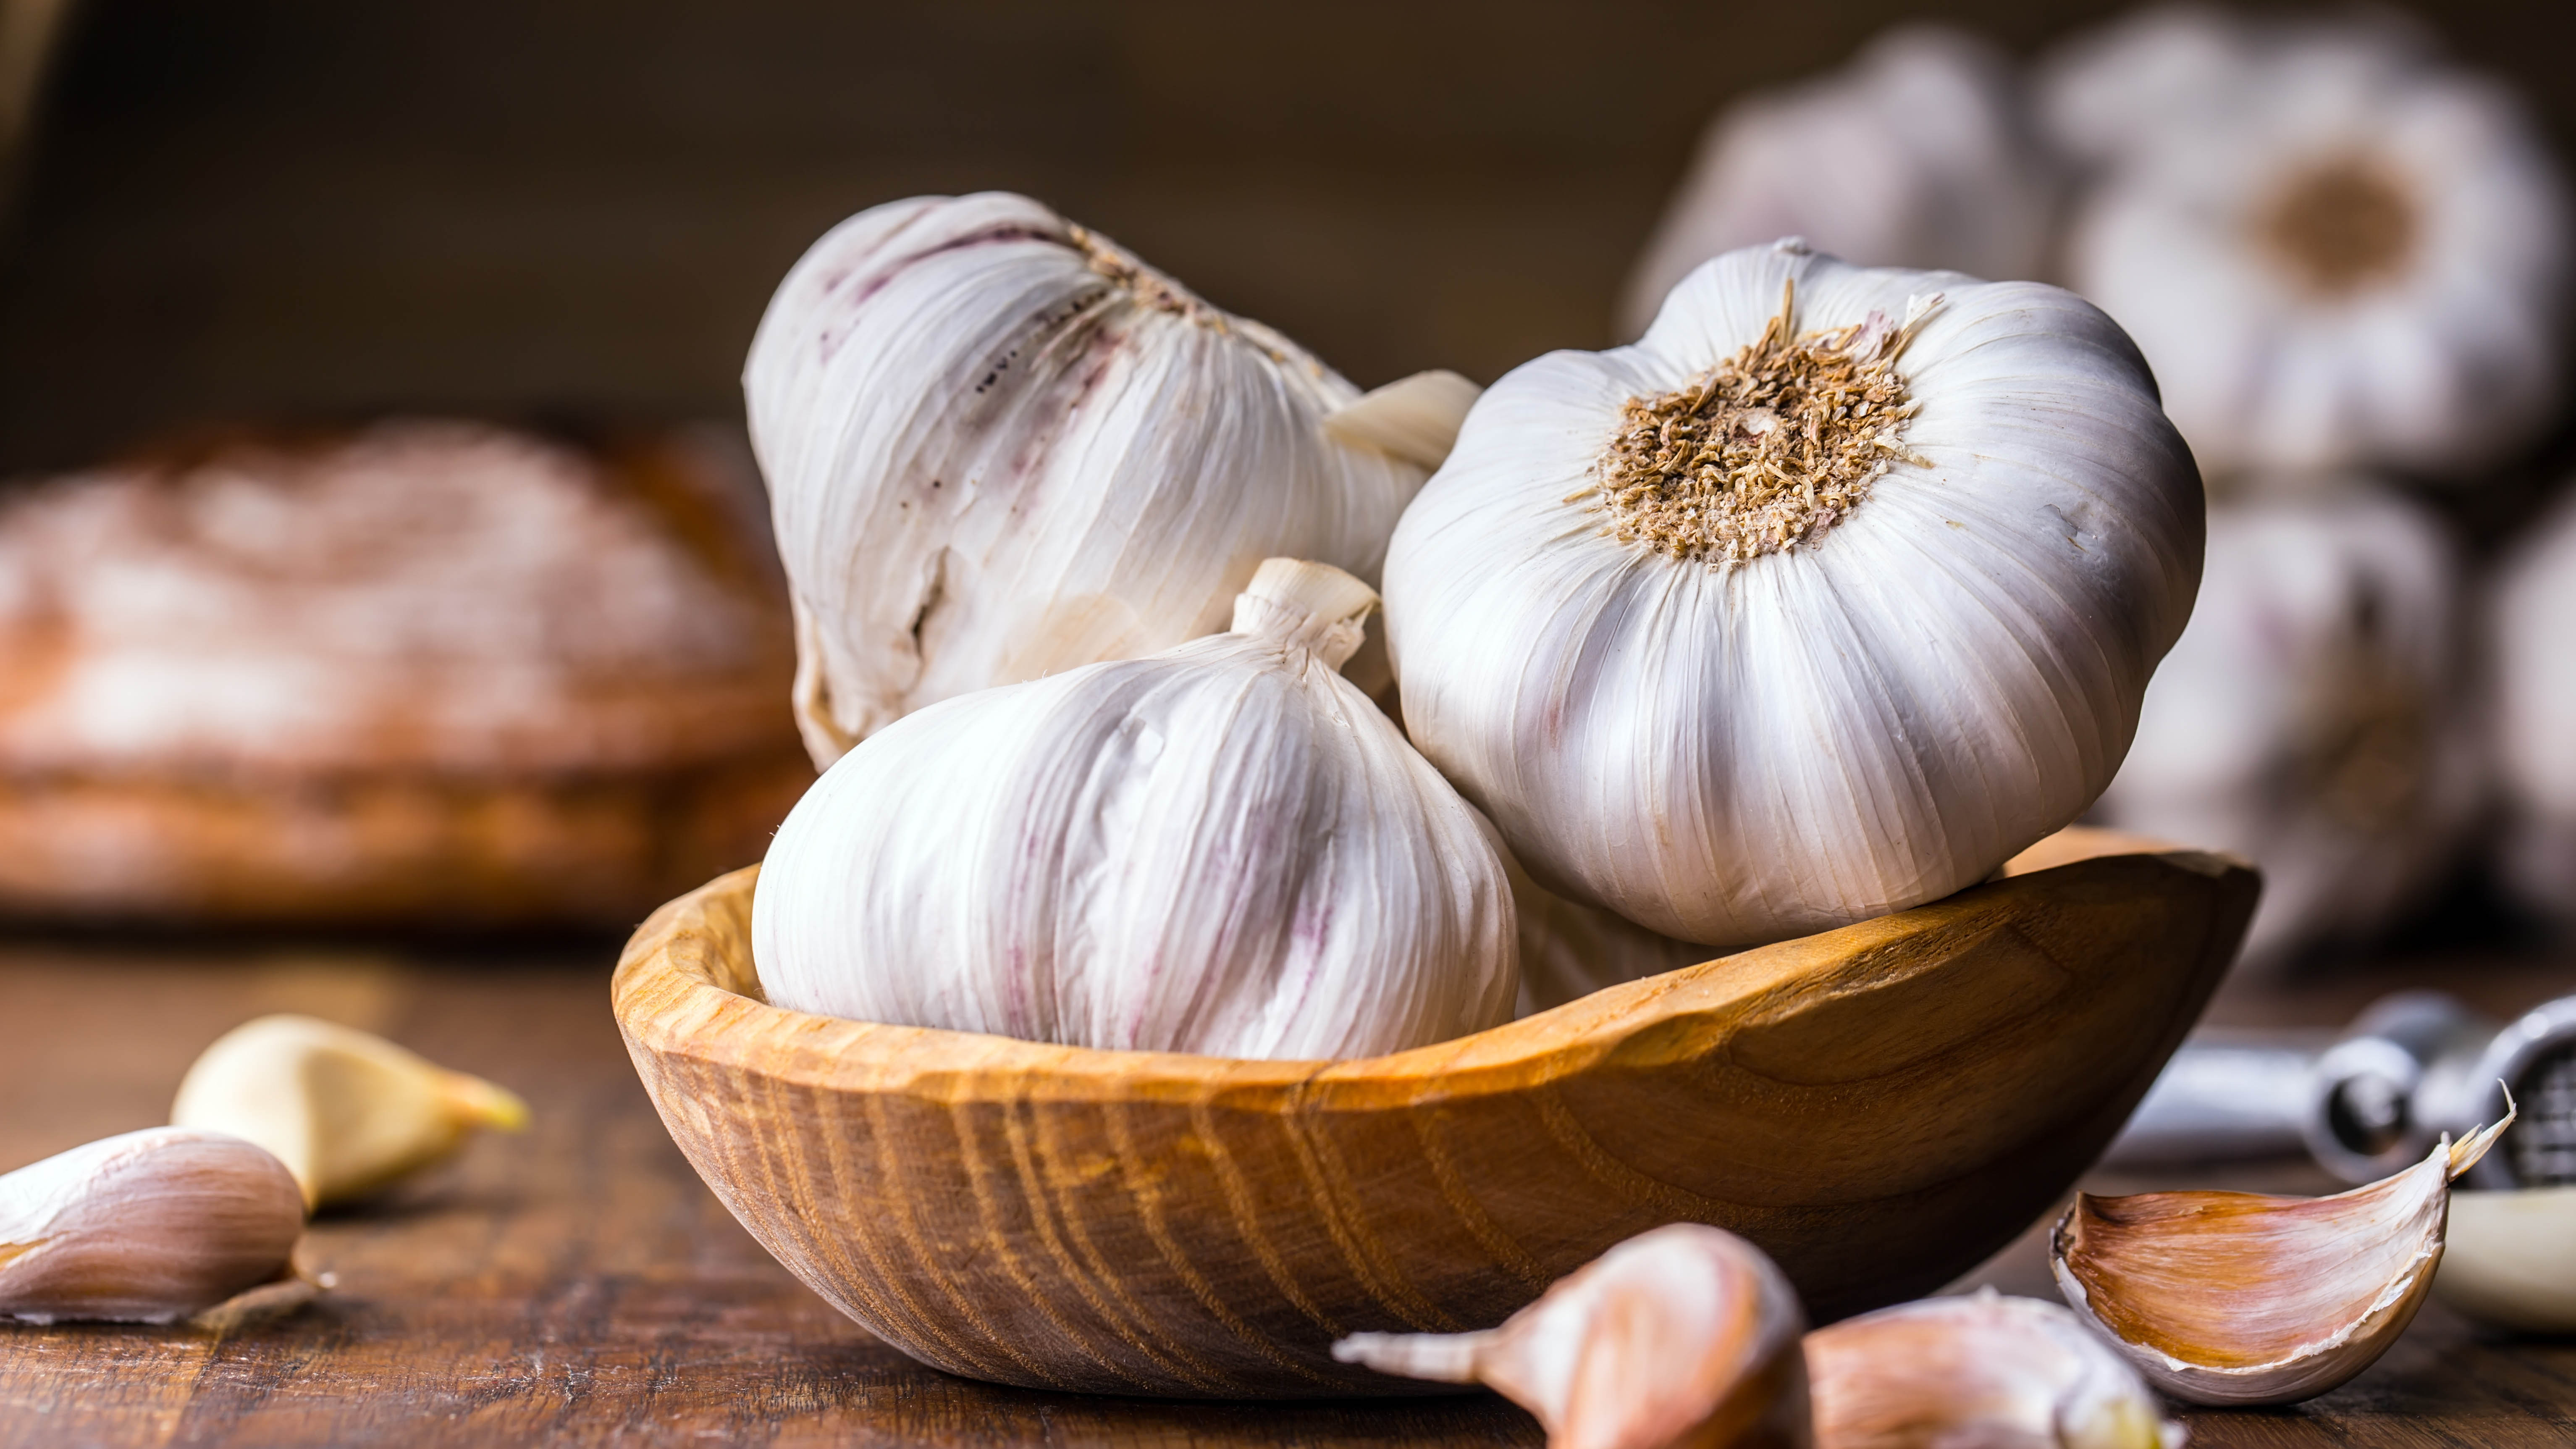 Garlic in wooden bowls